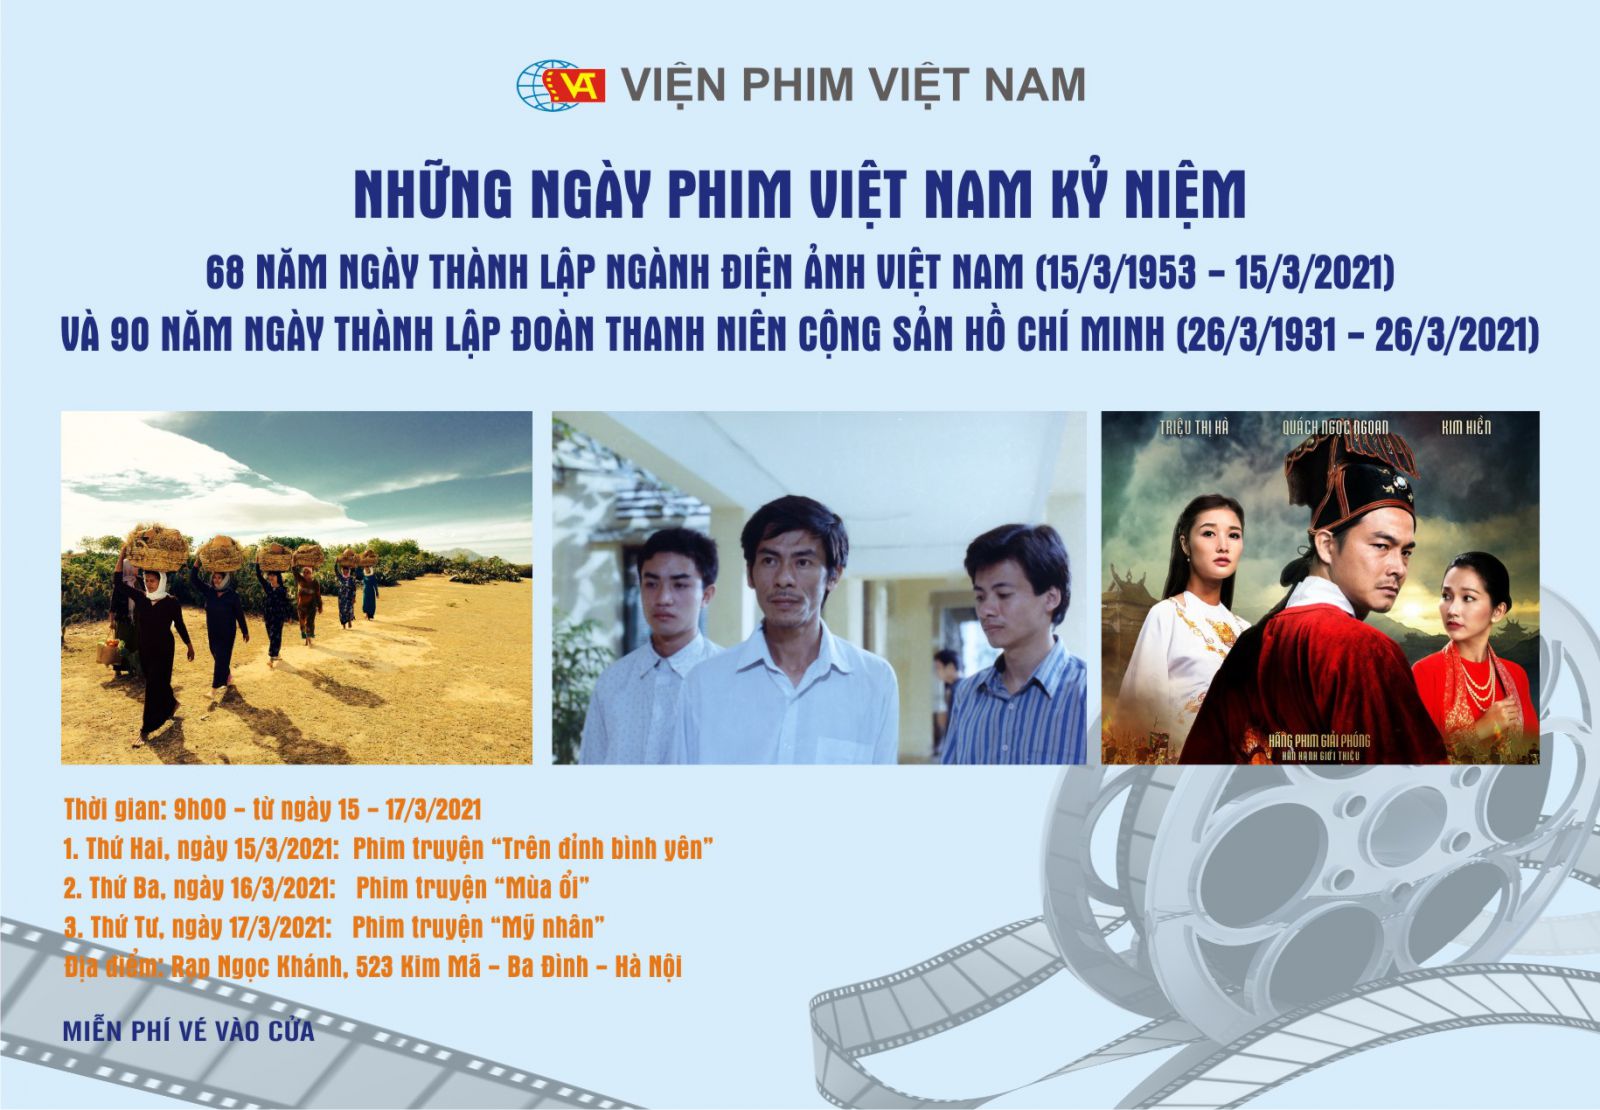 Viện Phim Việt Nam thông báo triệu tập thí sinh dự thi kỳ thi tuyển viên chức năm 2021